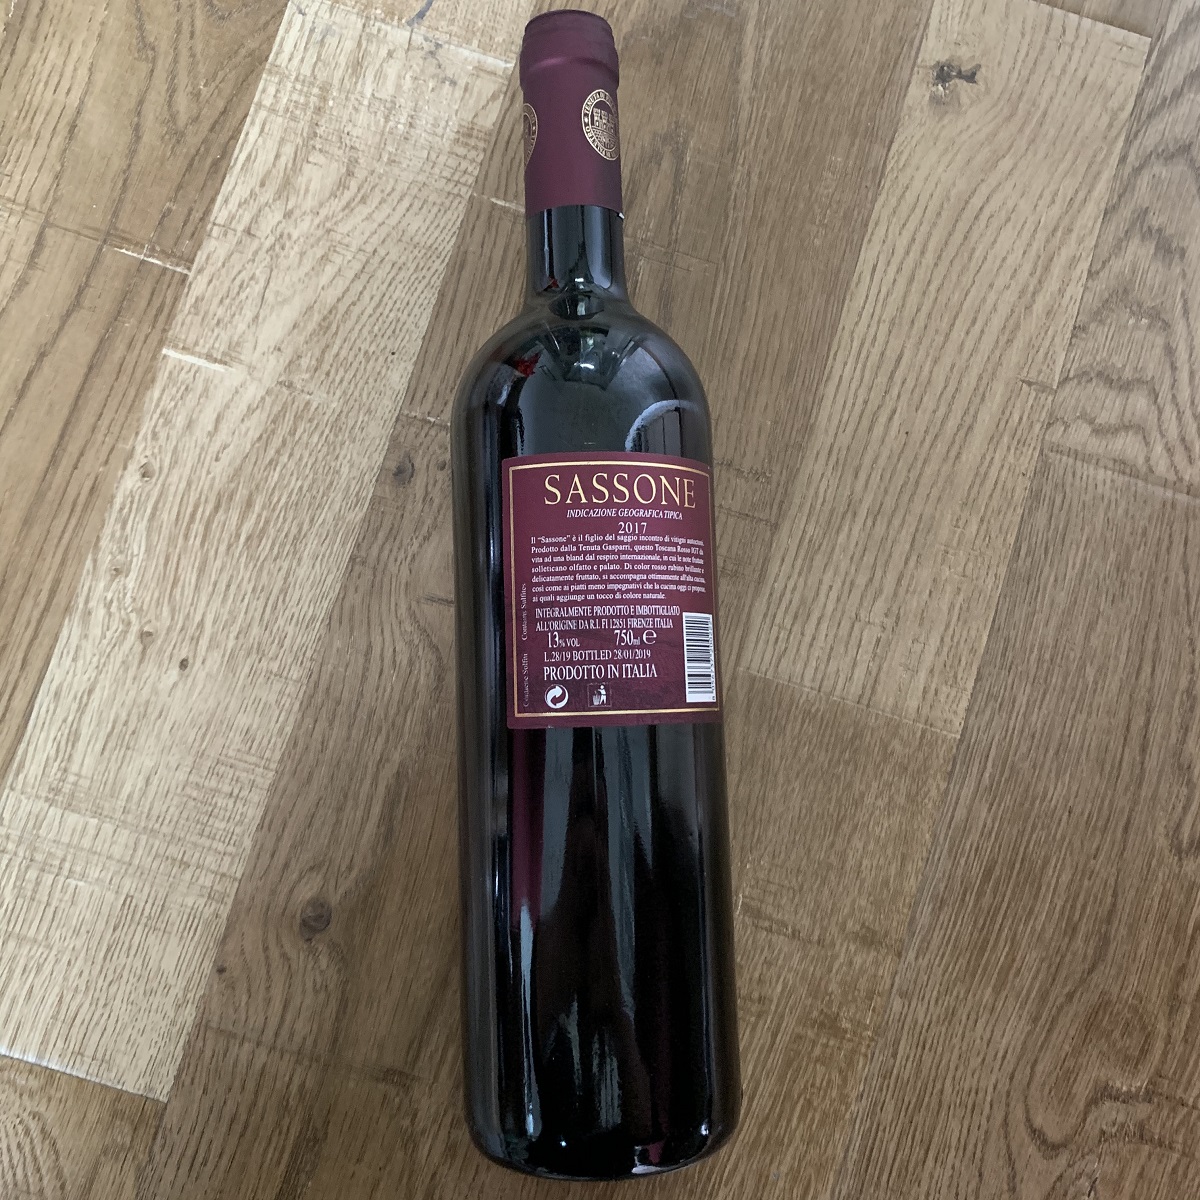 意大利托斯卡纳帕雷特罗酒庄混酿撒索尼IGT干红葡萄酒